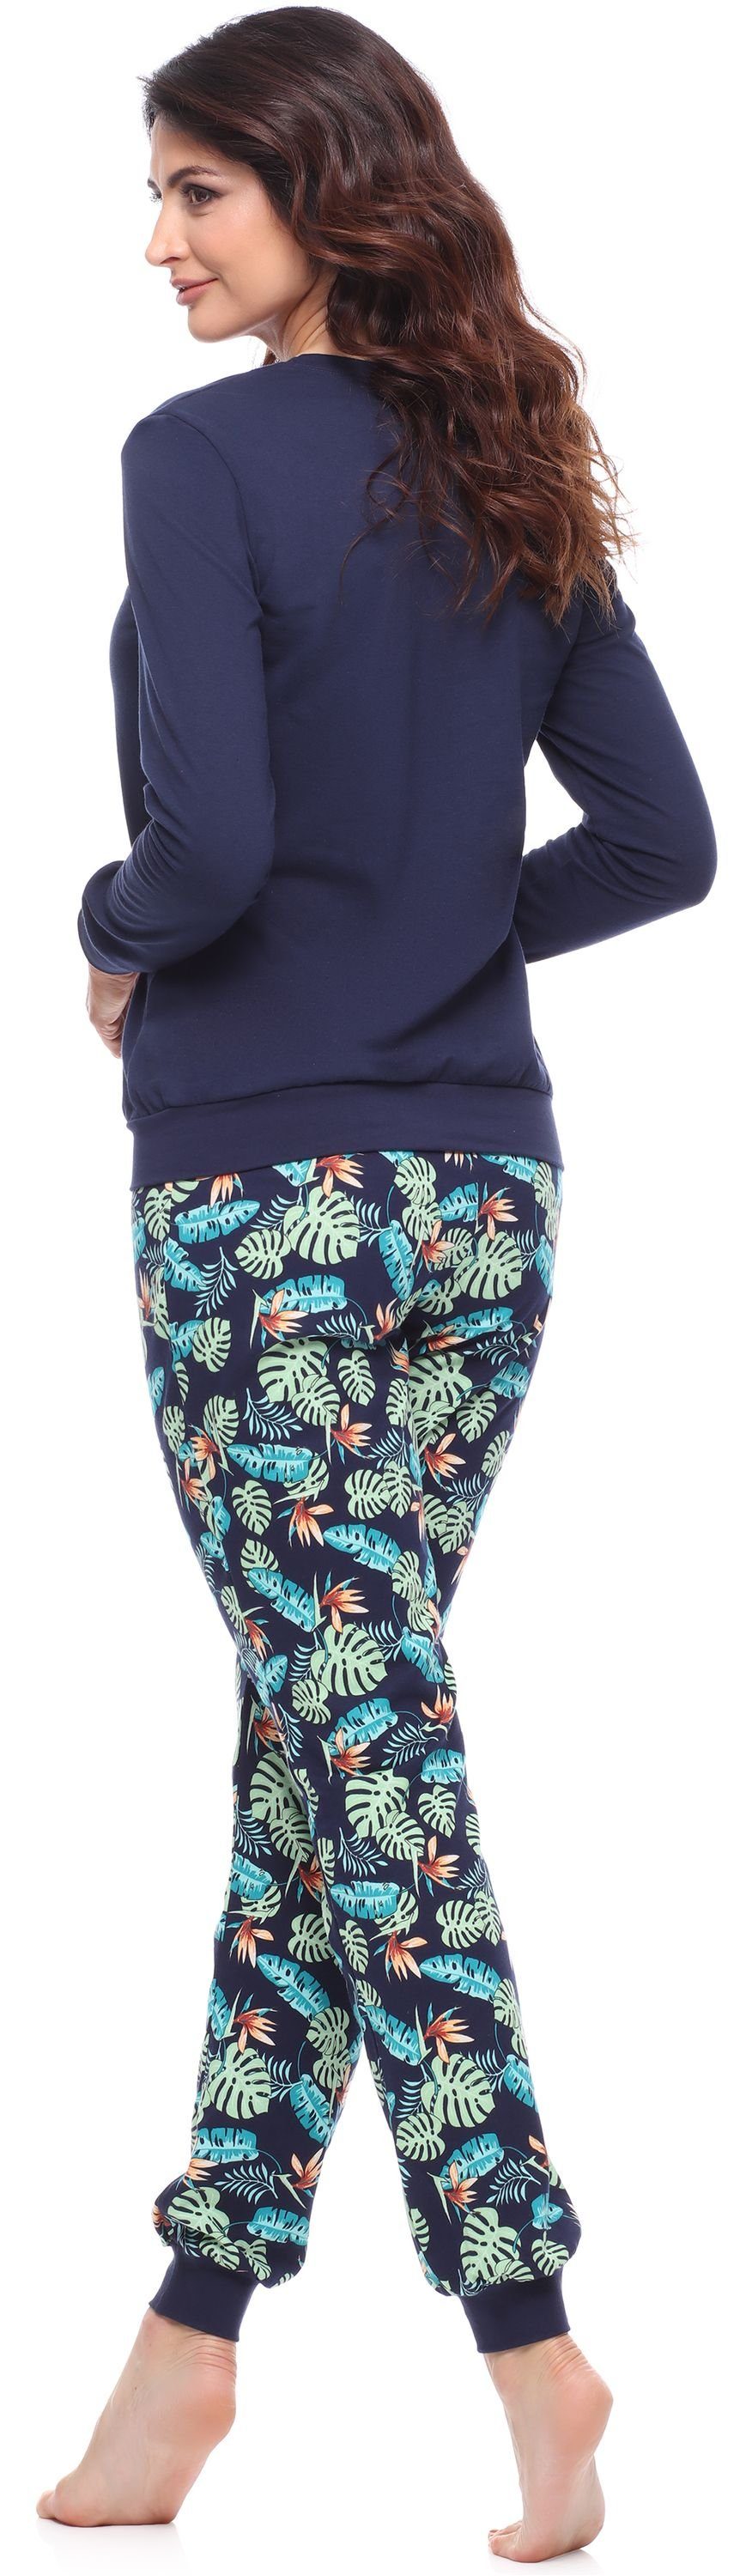 Merry Style Schlafanzug Marineblau/Blätter MS10-268 lang bunt mit Schlafanzug Pyjama Muster Damen Zweiteiler